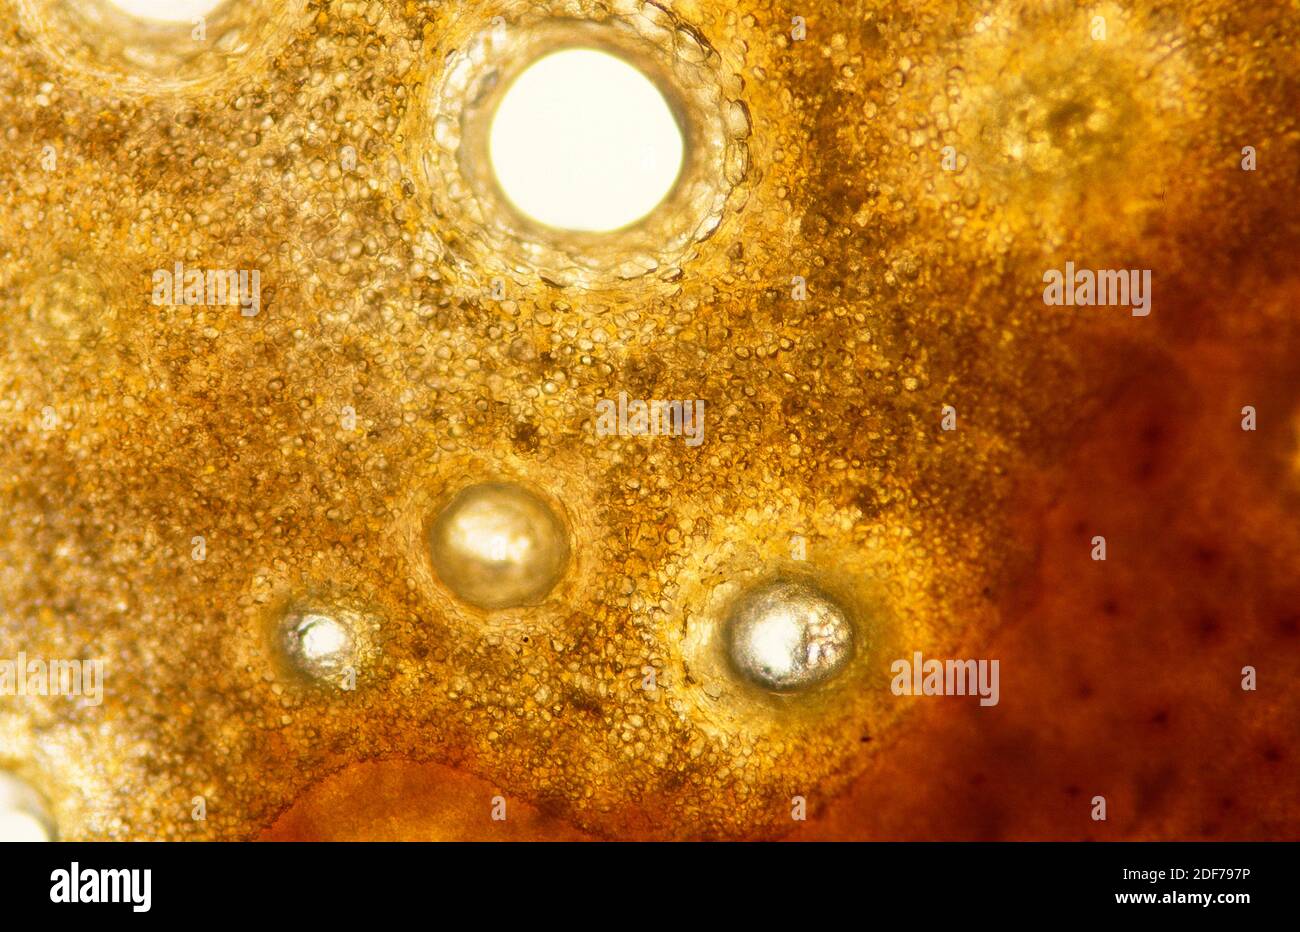 Glandes séctrices de zeste d'orange. Photomicrographe. Banque D'Images